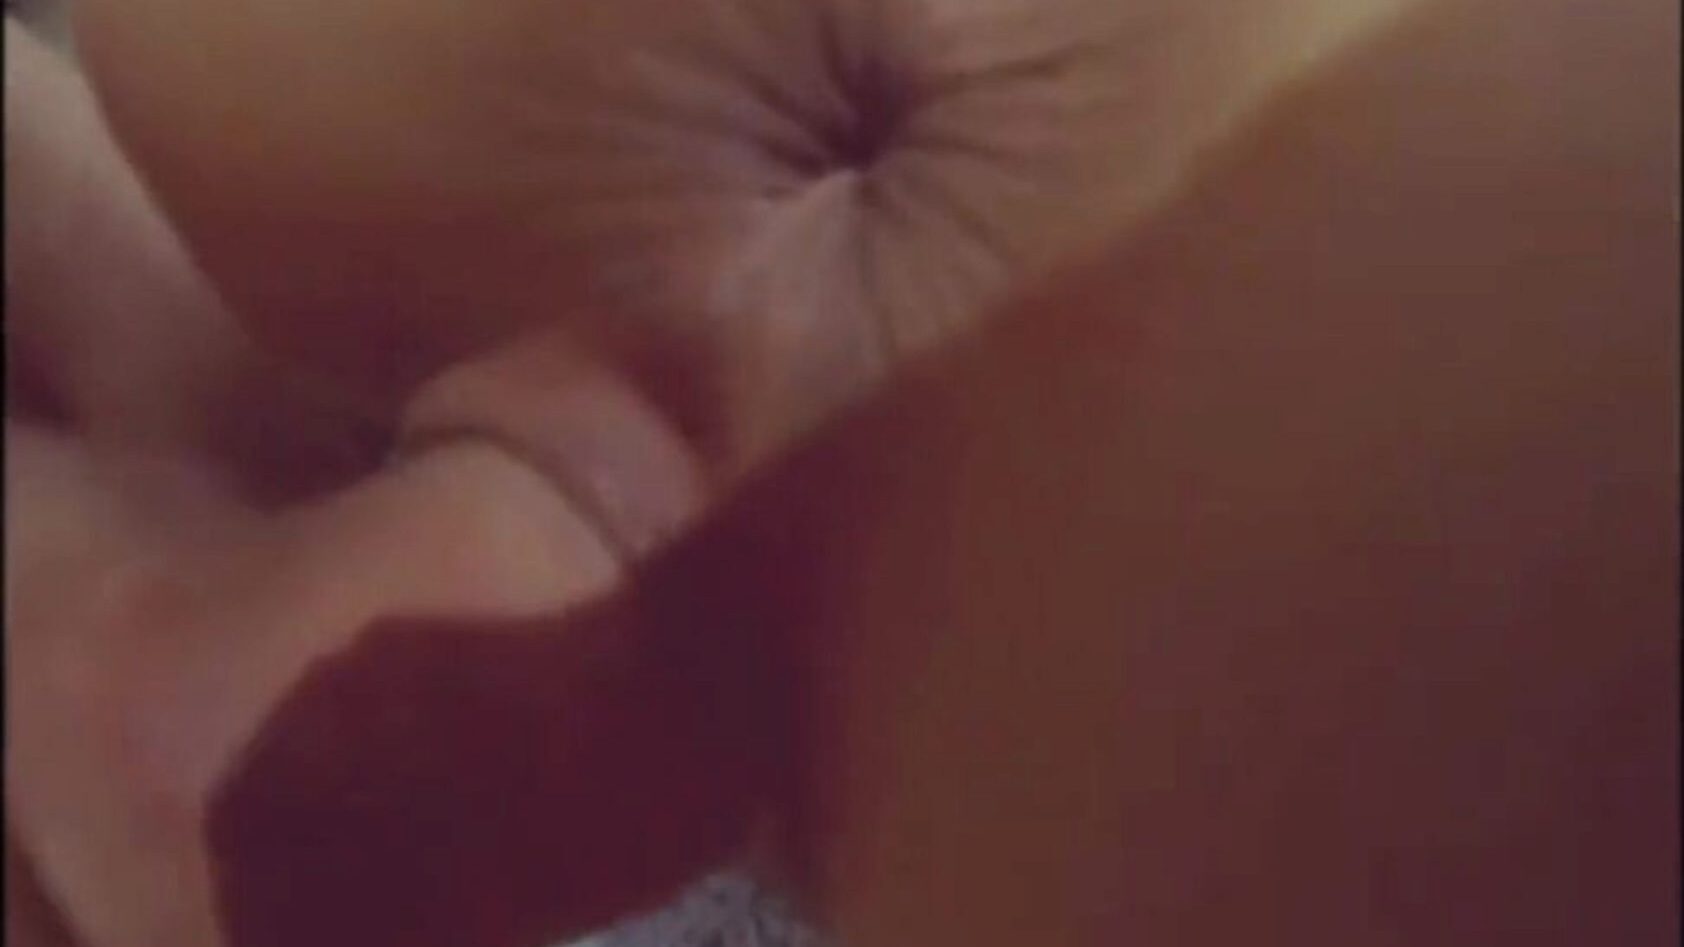 άγριο ισχυρό πουλί μέσα στο μουνί της - ανοιχτές τρύπες! instagram - skinnyhotboygr